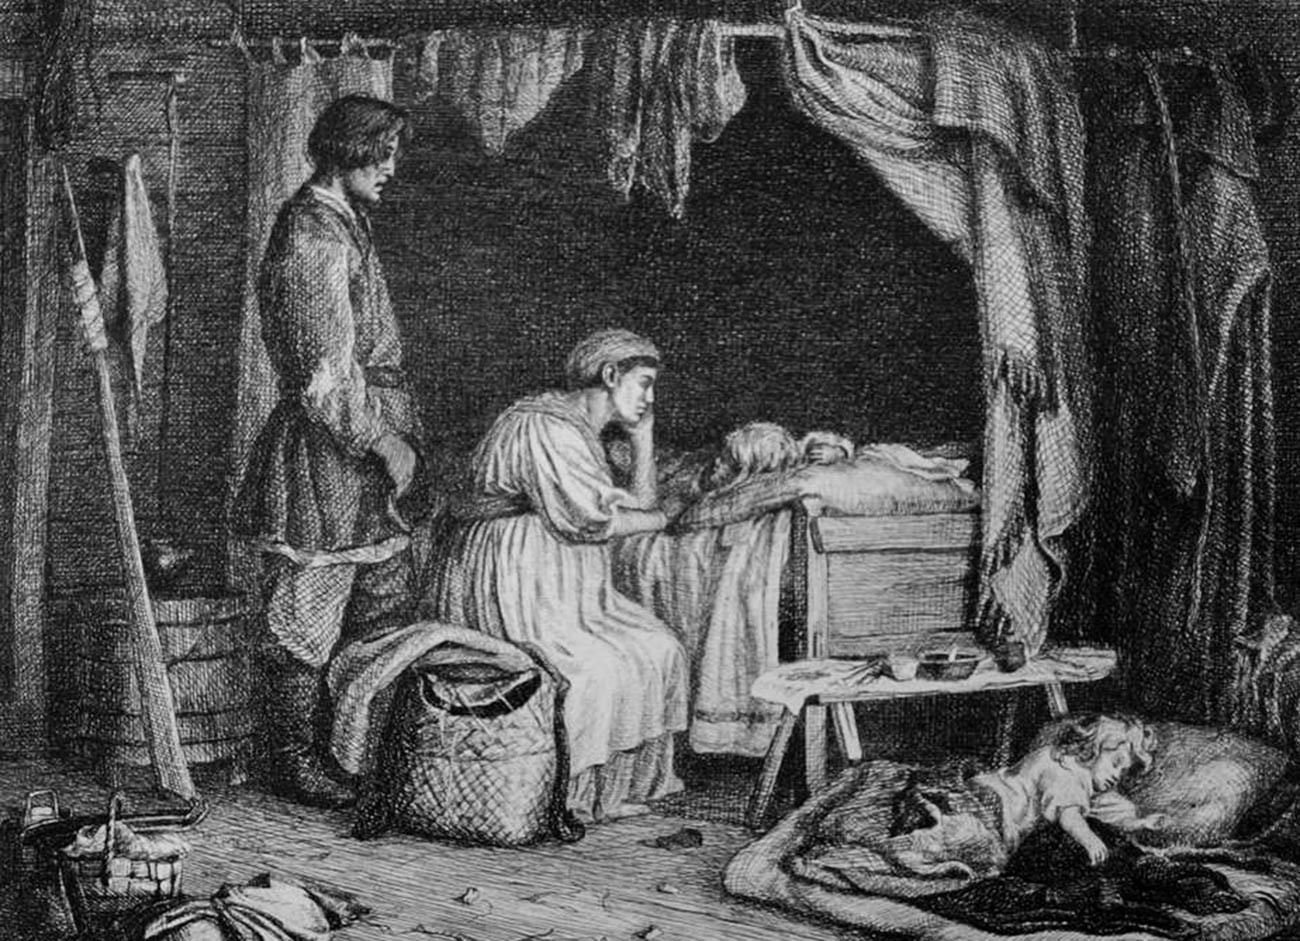 La plupart des familles des paysans russes étaient très pauvres. Beaucoup d'enfants ne survivaient pas après leur naissance.